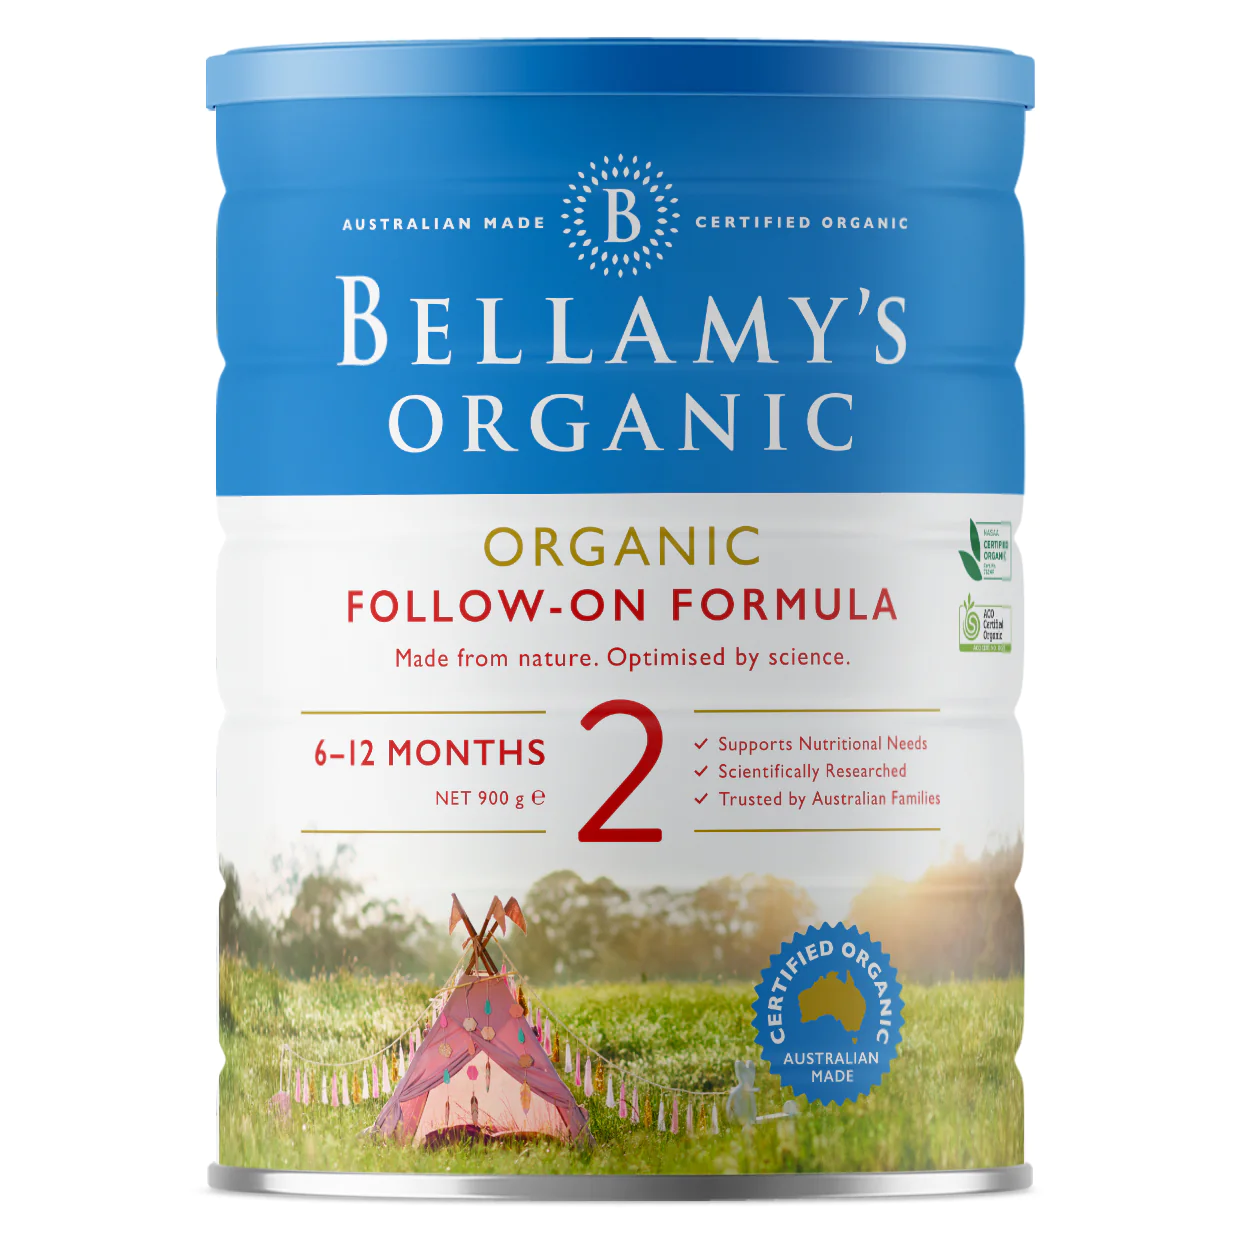 Bellamy’s Organic